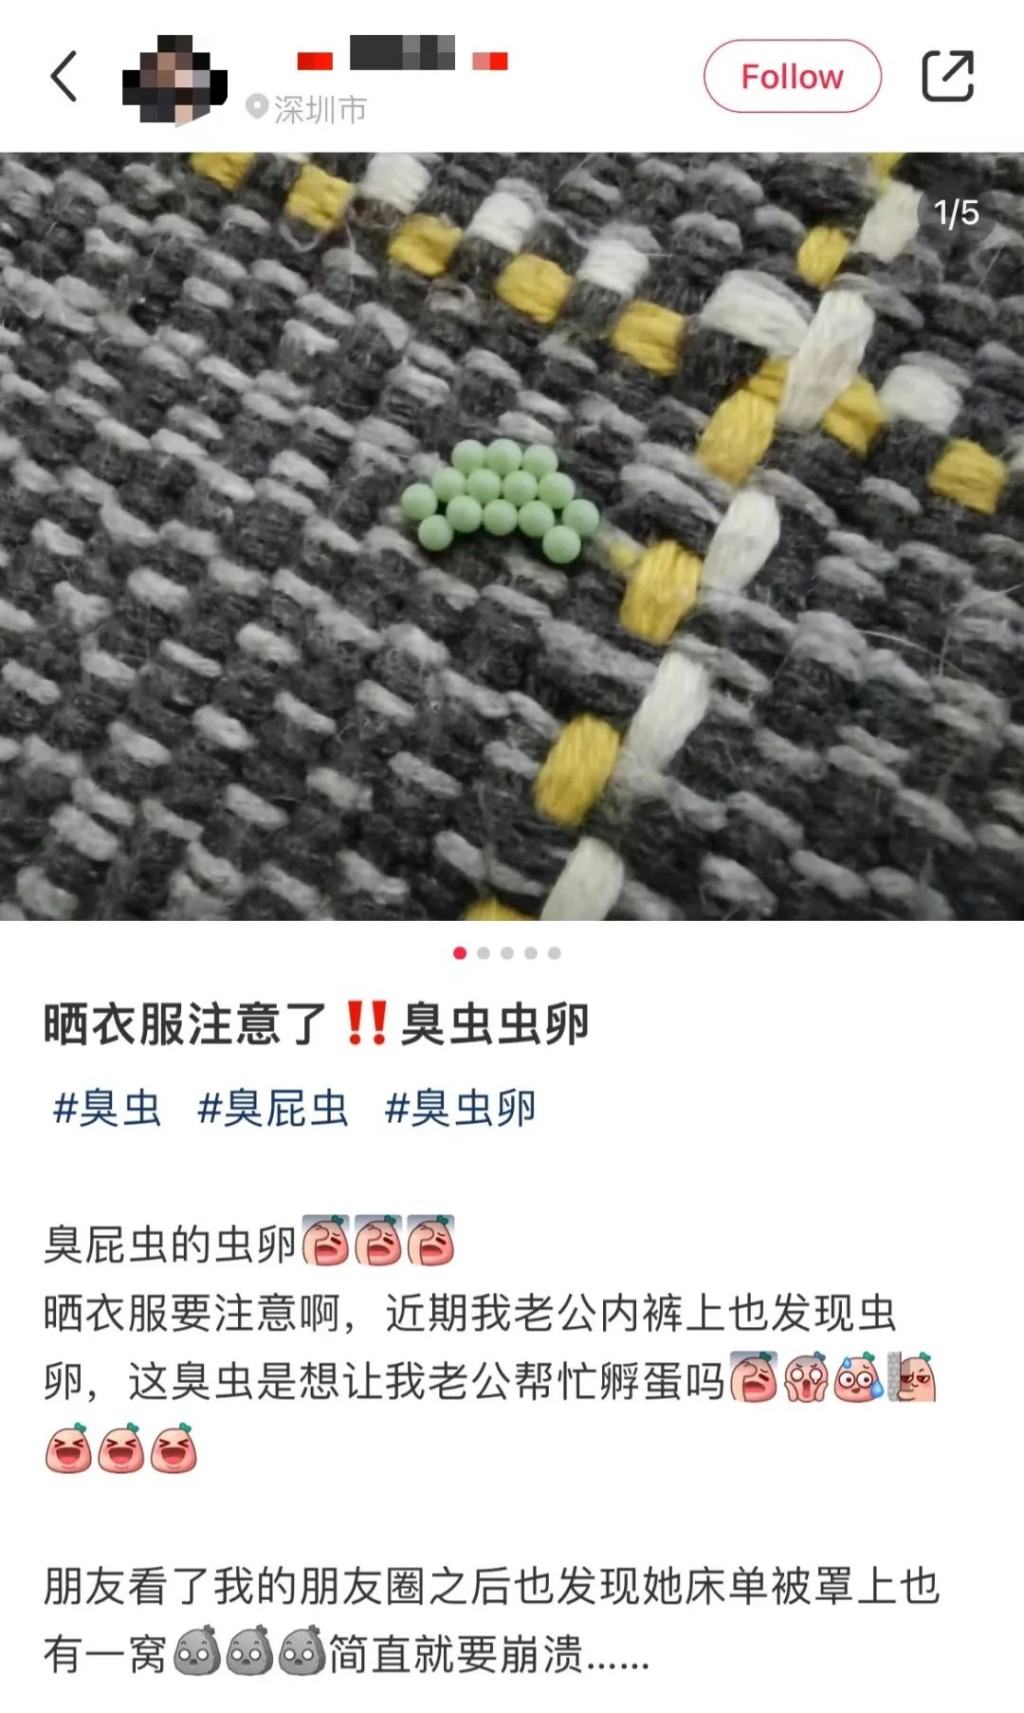 深圳市民發文稱遇上衣服黏綠色小顆粒。